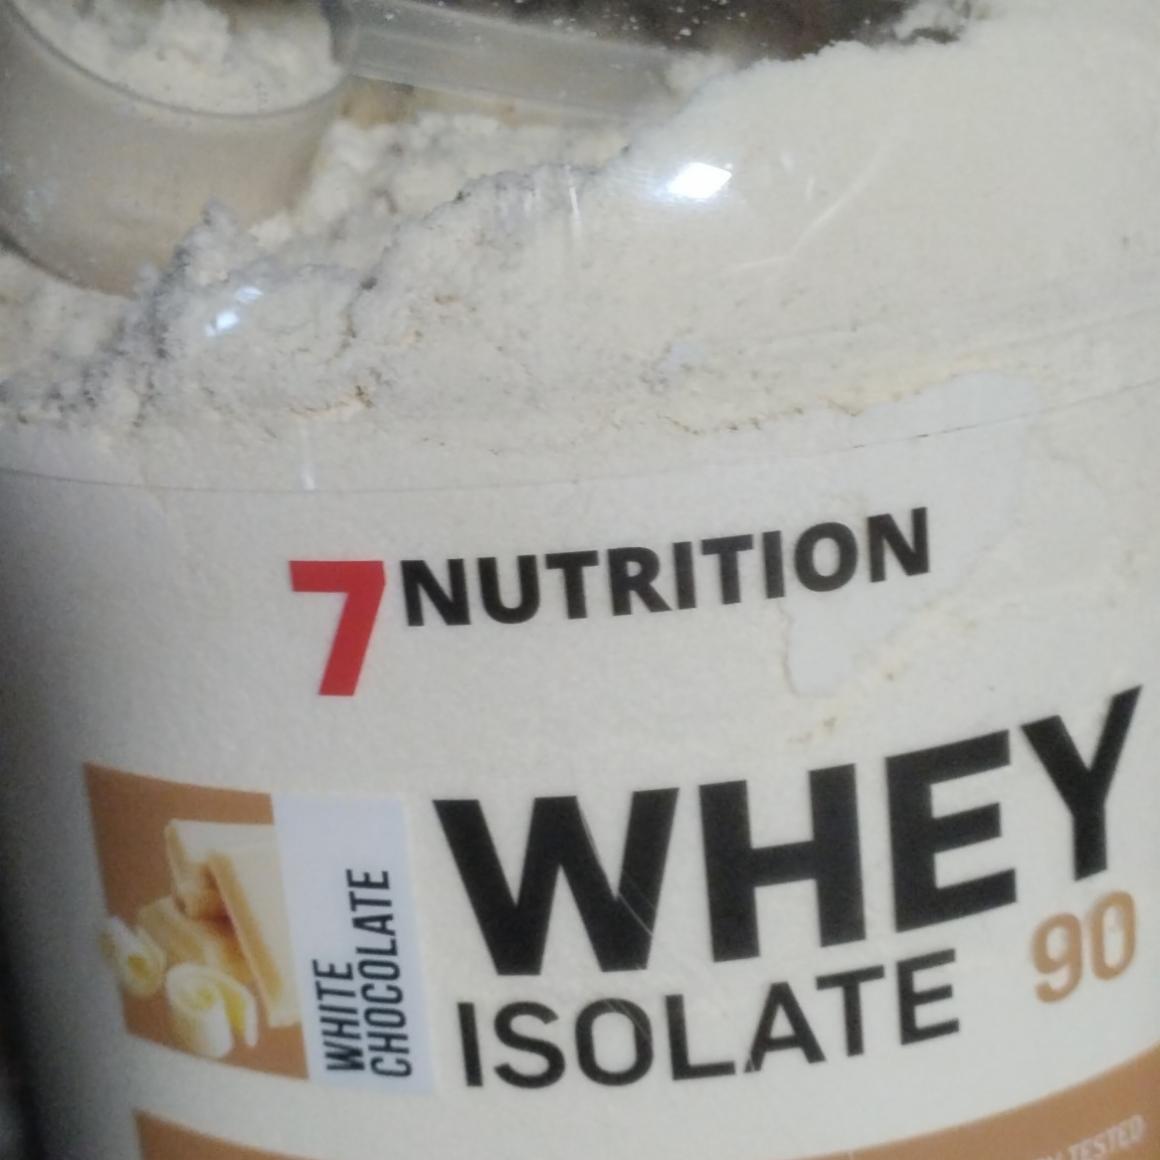 Zdjęcia - Whey isolate 90 white chocolate 7 nutrition